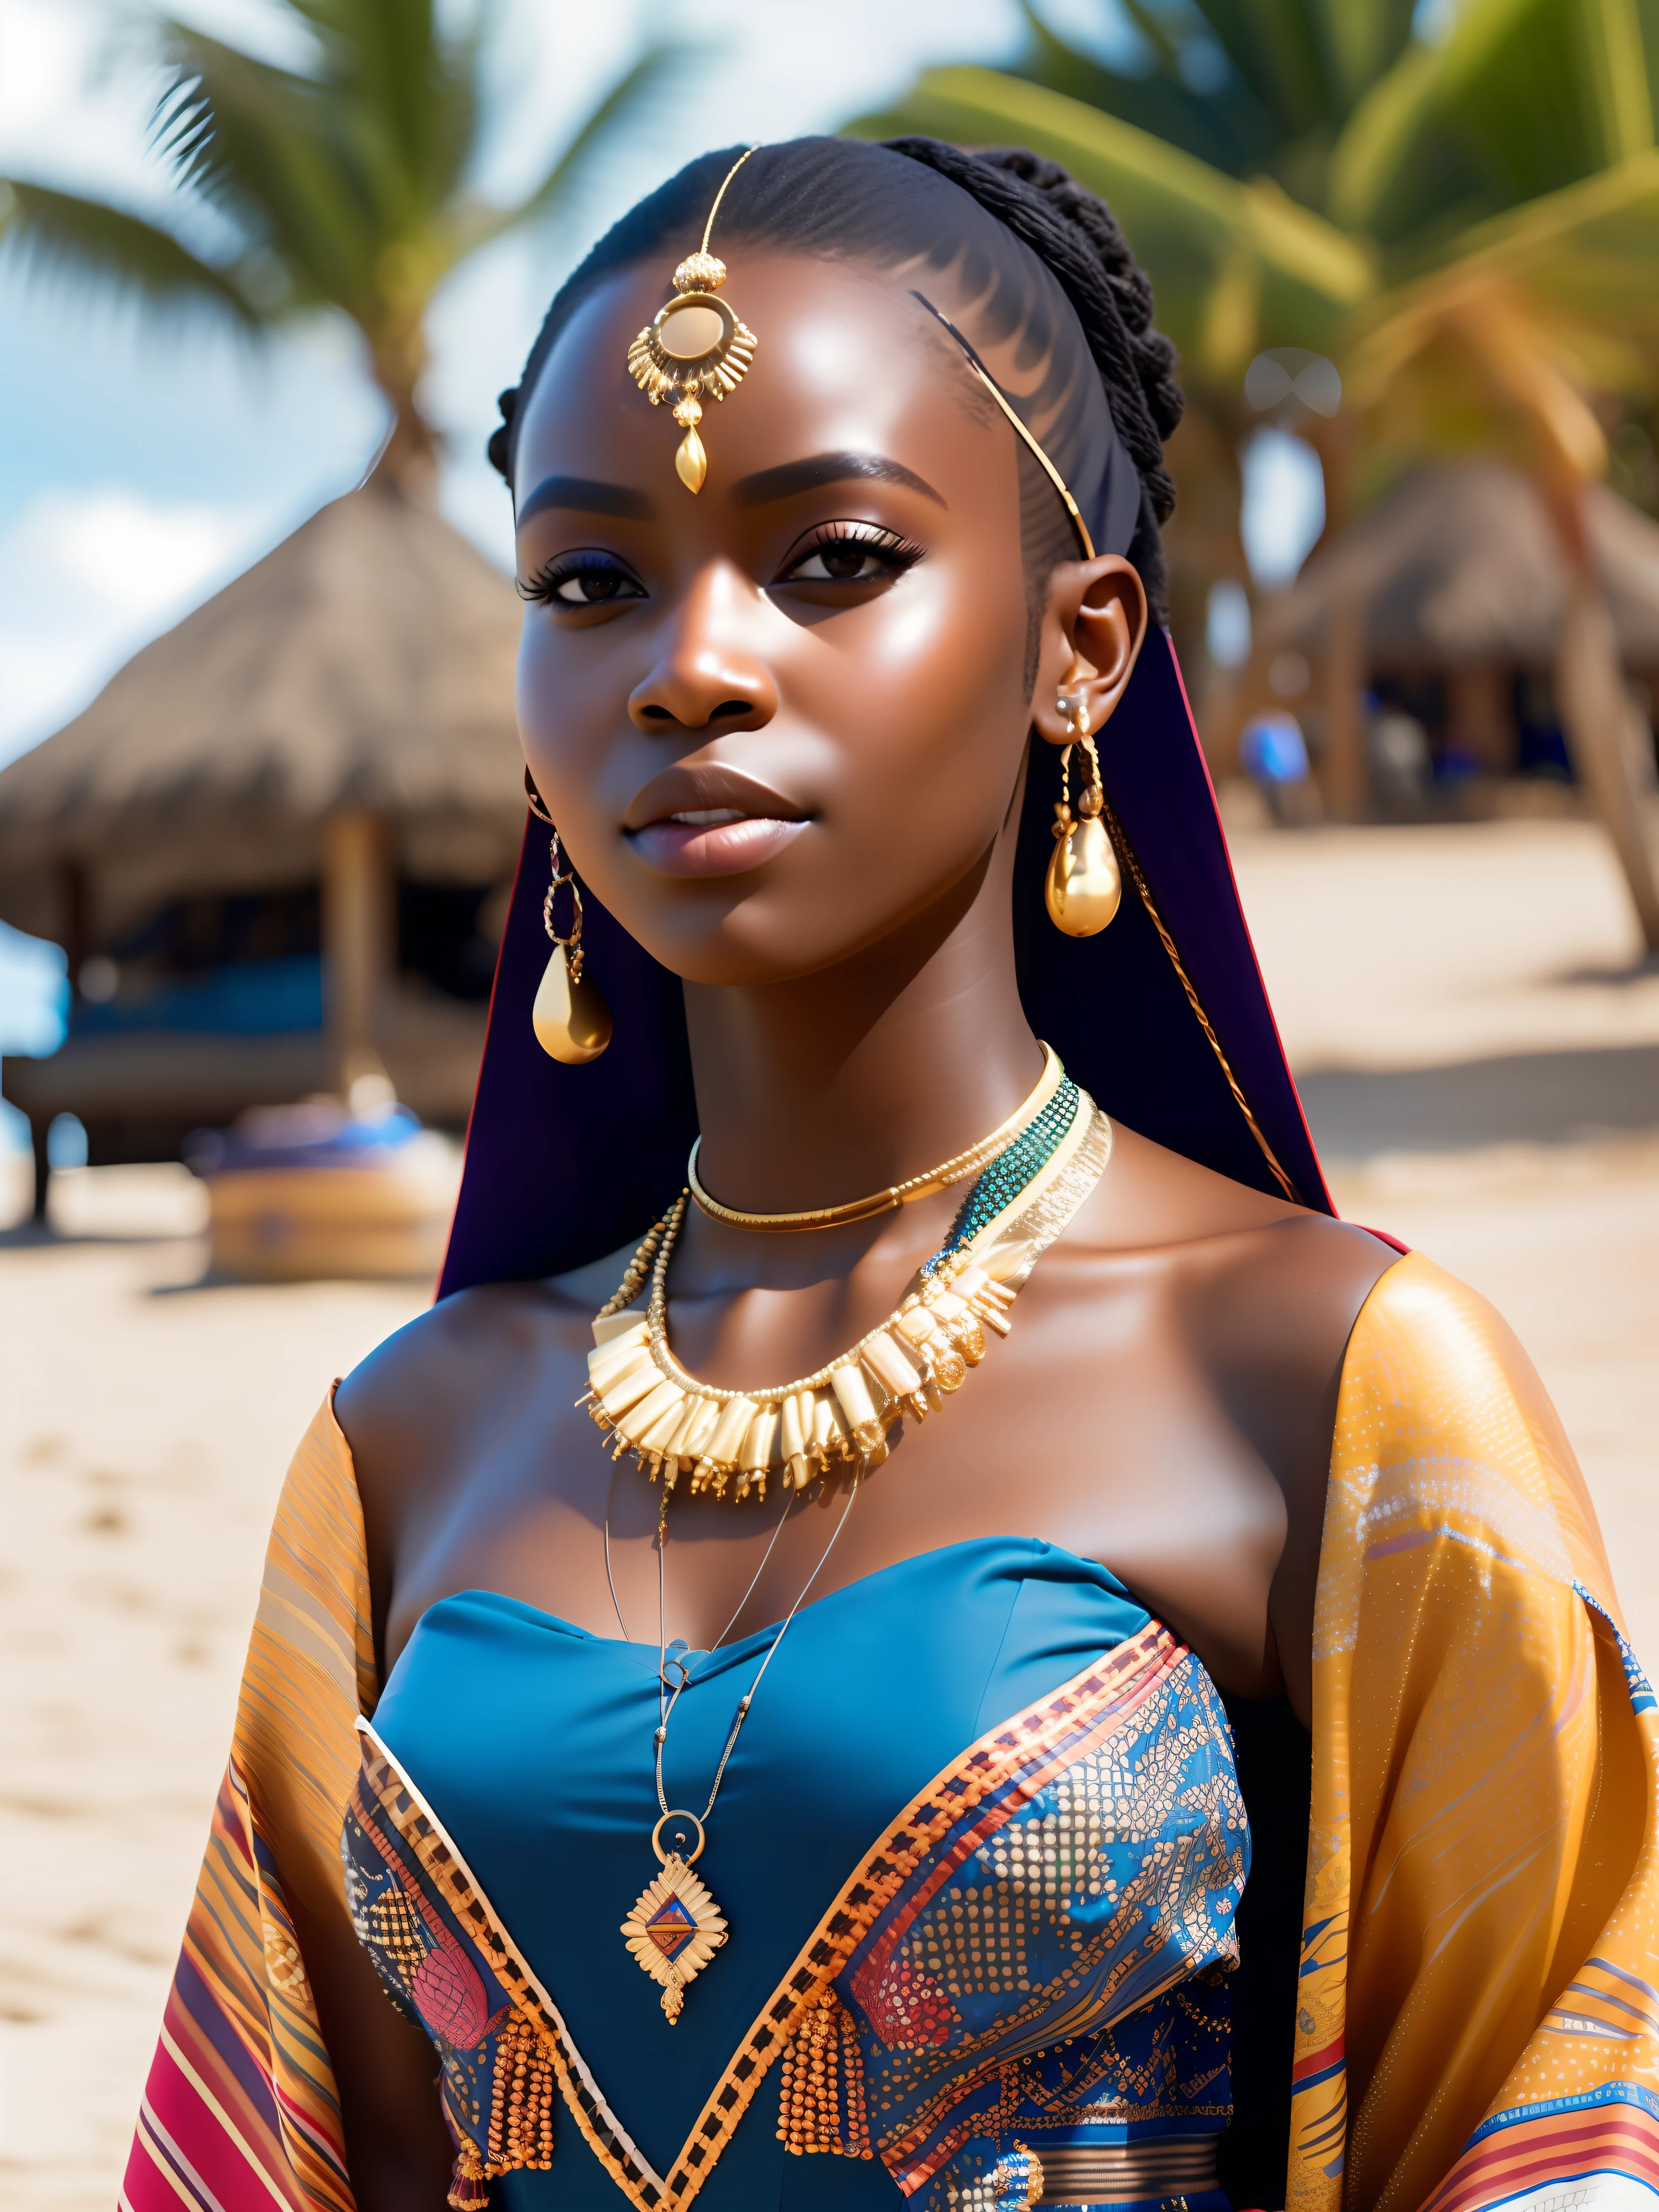 他妈的_科幻, 他妈的_科幻_v2, 海滩前一位非常美丽的年轻非洲女性的画像, 色彩丰富的衣服, 金色非洲珠宝, 特写, 皇家姿态. 他妈的_电影_v2. 他妈的_电影_v2